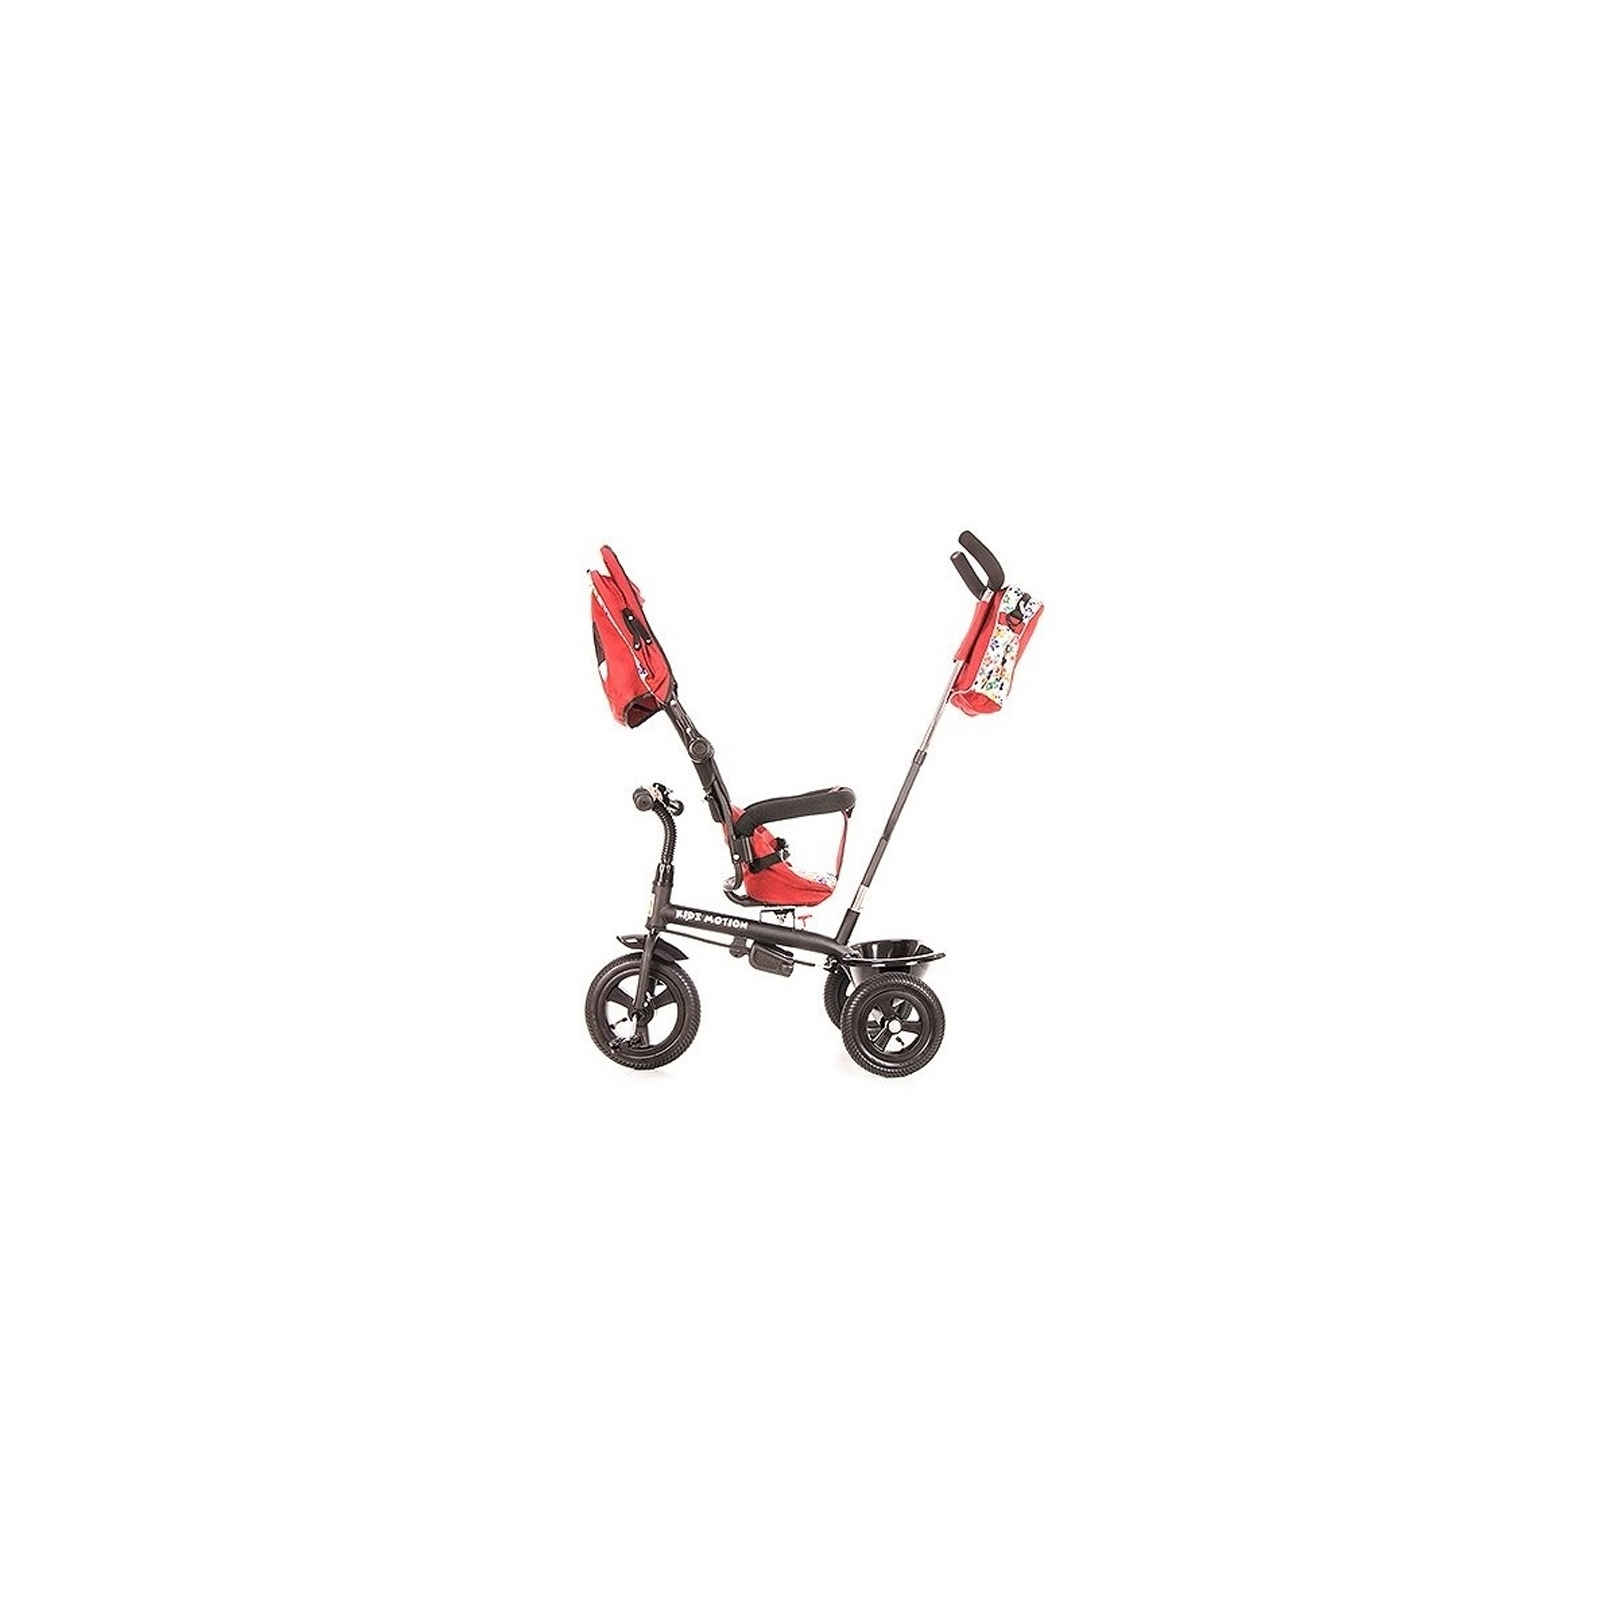 Детский велосипед KidzMotion Tobi Venture RED (115002/red) изображение 3